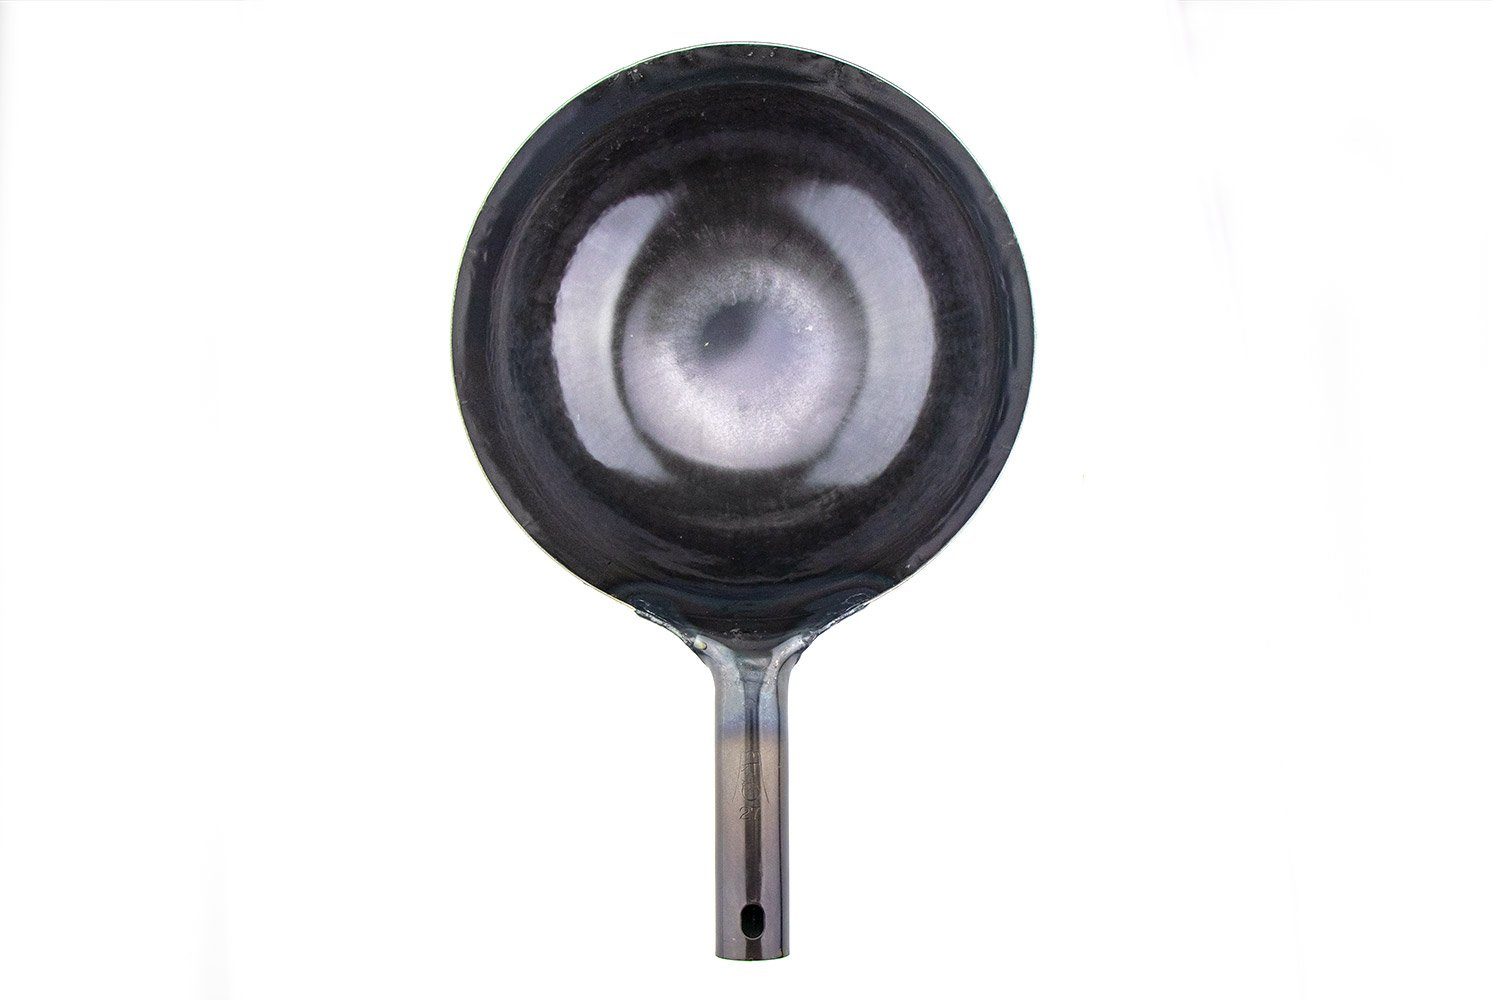 Shuoguoleilei shuoguoleilei Chinese Hand Hammered Iron Woks Set, Non-stick  No Coating Preseasoned Wok Blue Round Bottom Wok Pan For Electric